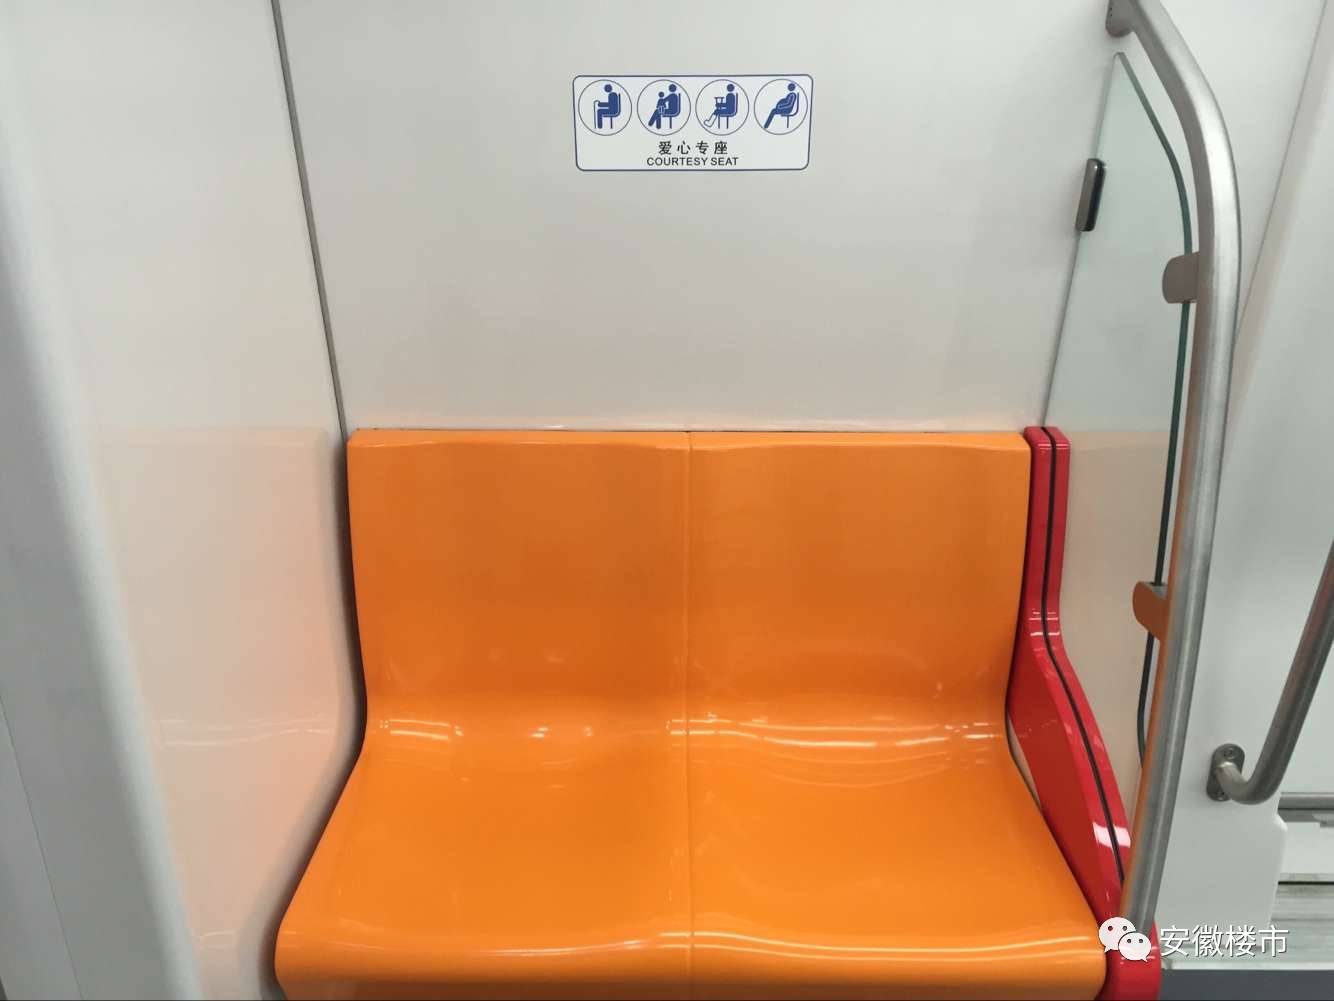 这是地铁车厢里的爱心座椅